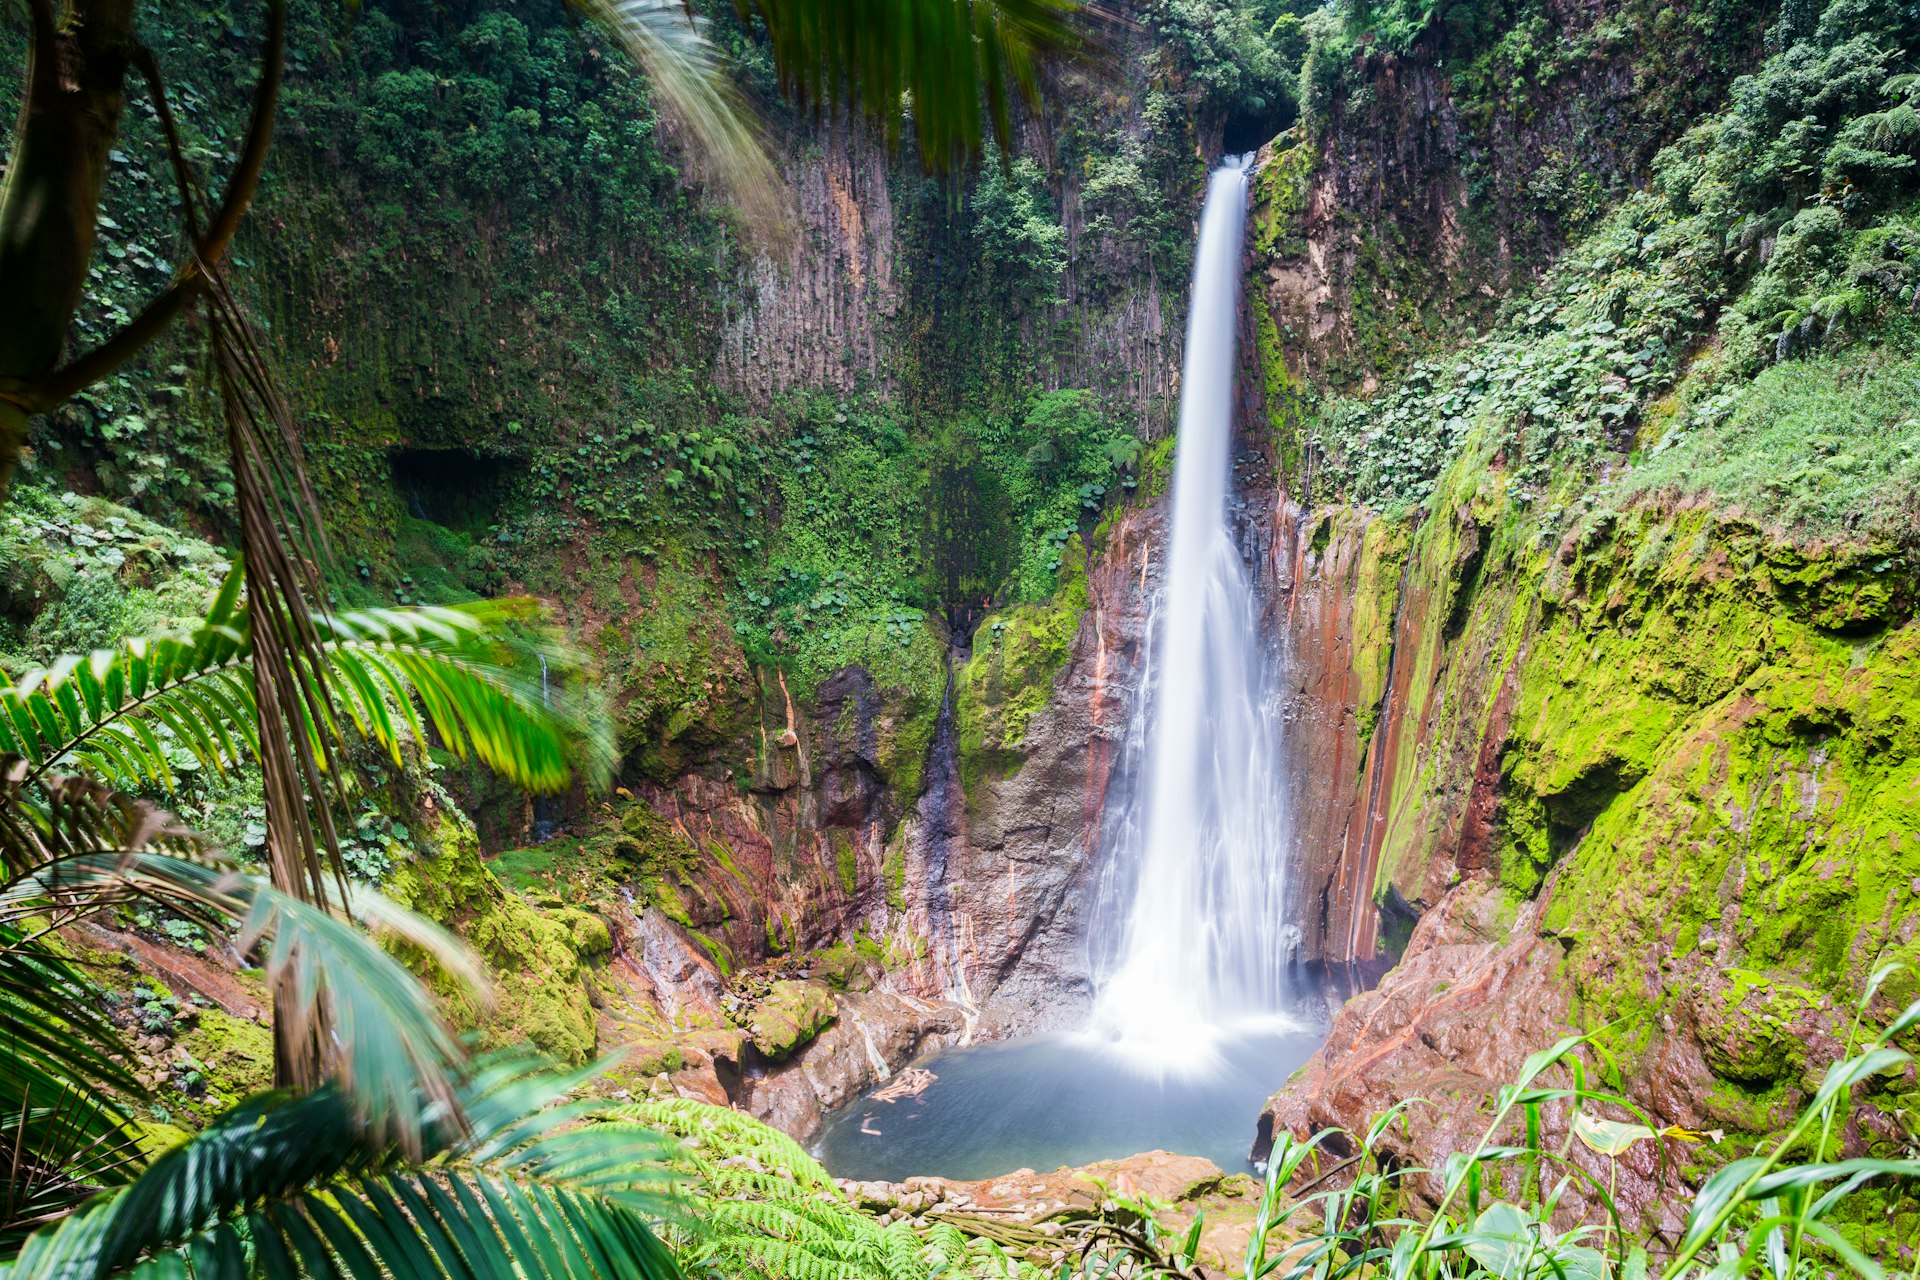 Costa Rica, Catarata del Toro waterfall